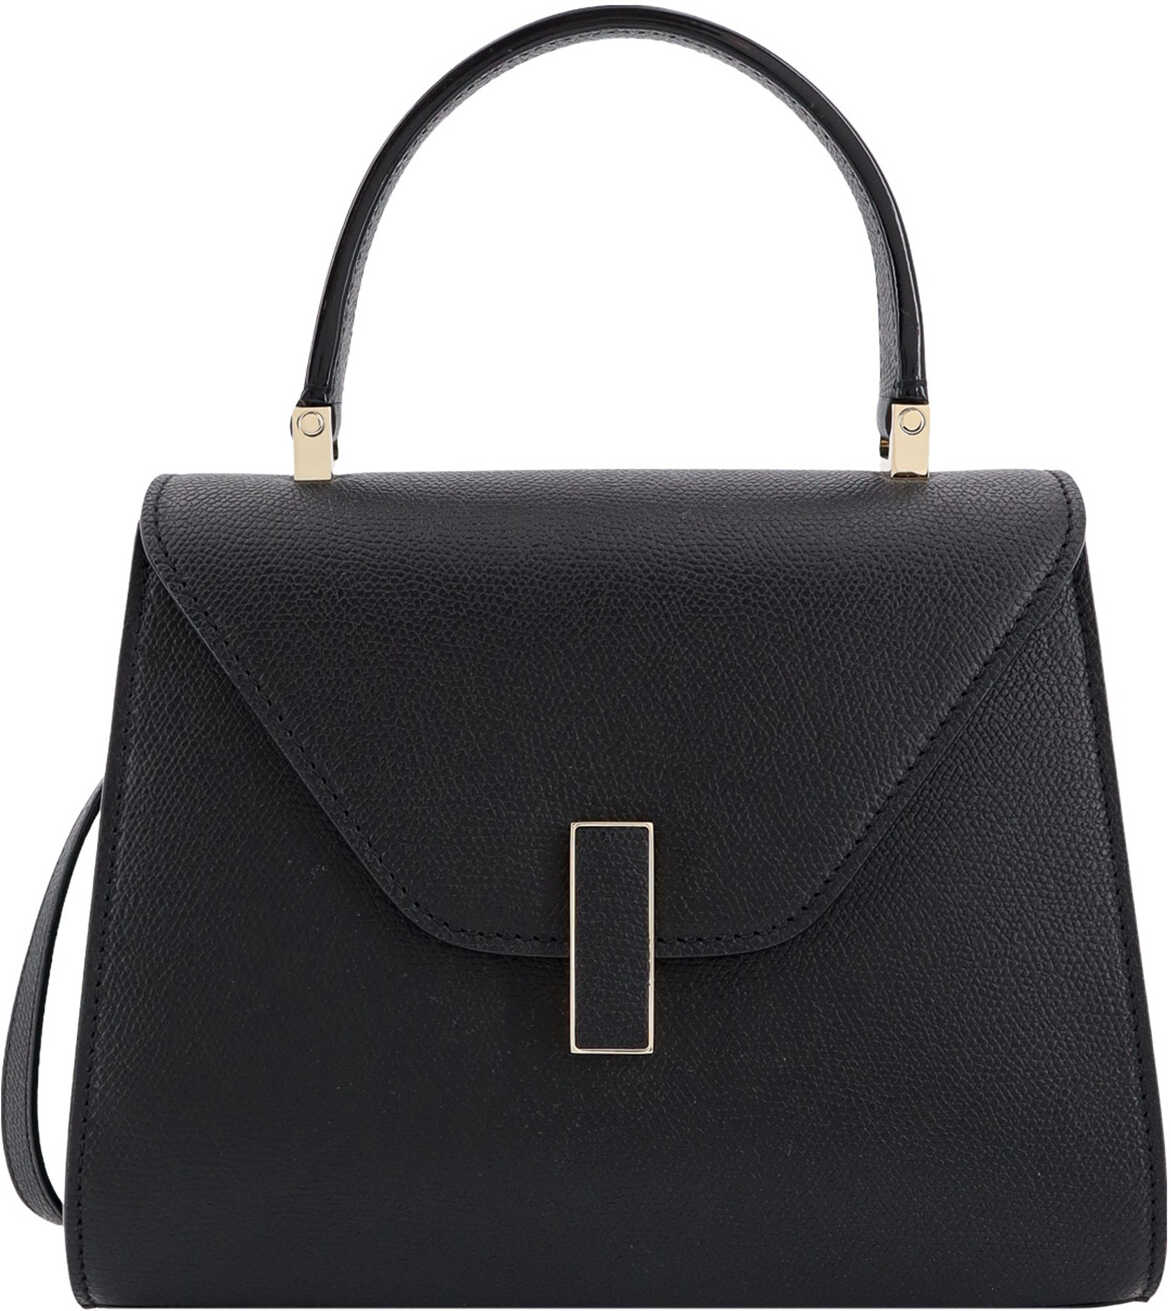 VALEXTRA Handbag Black